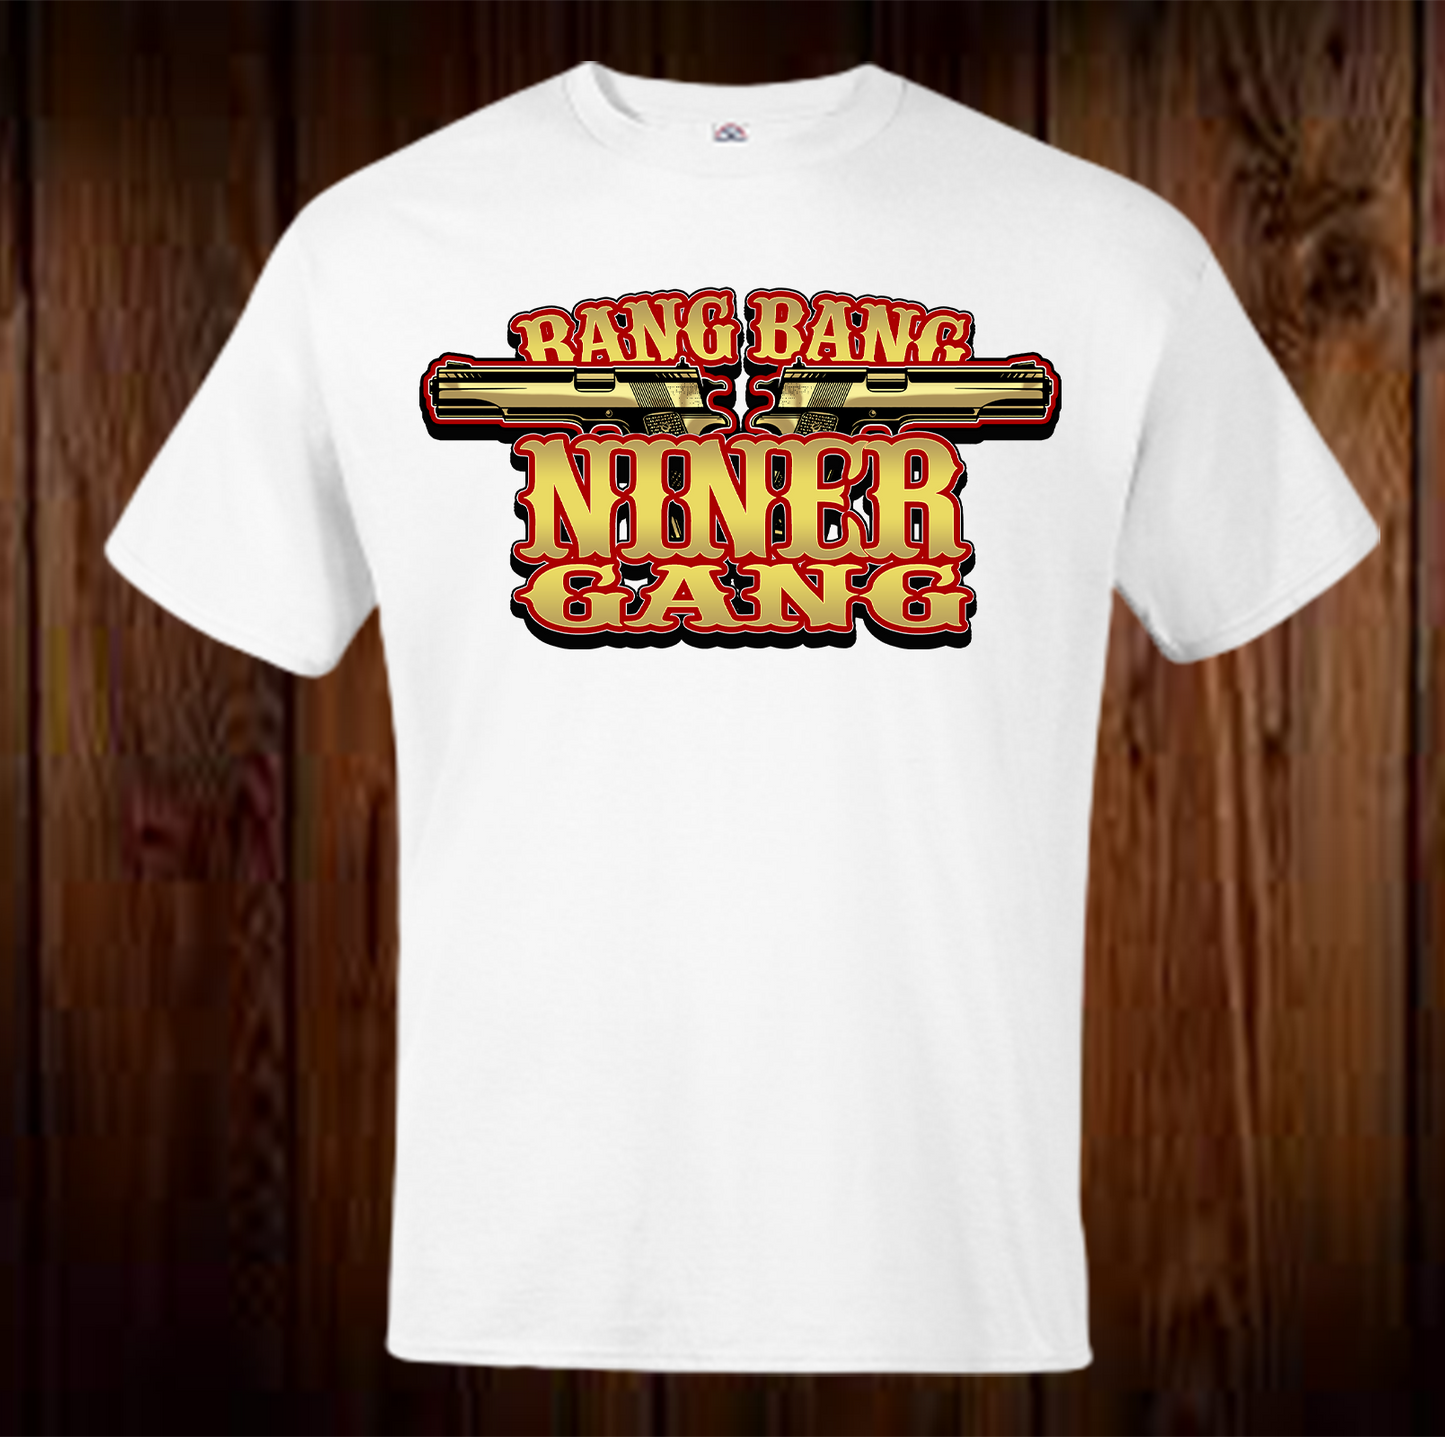 Bang Bang Niner Gang 3 Shirt